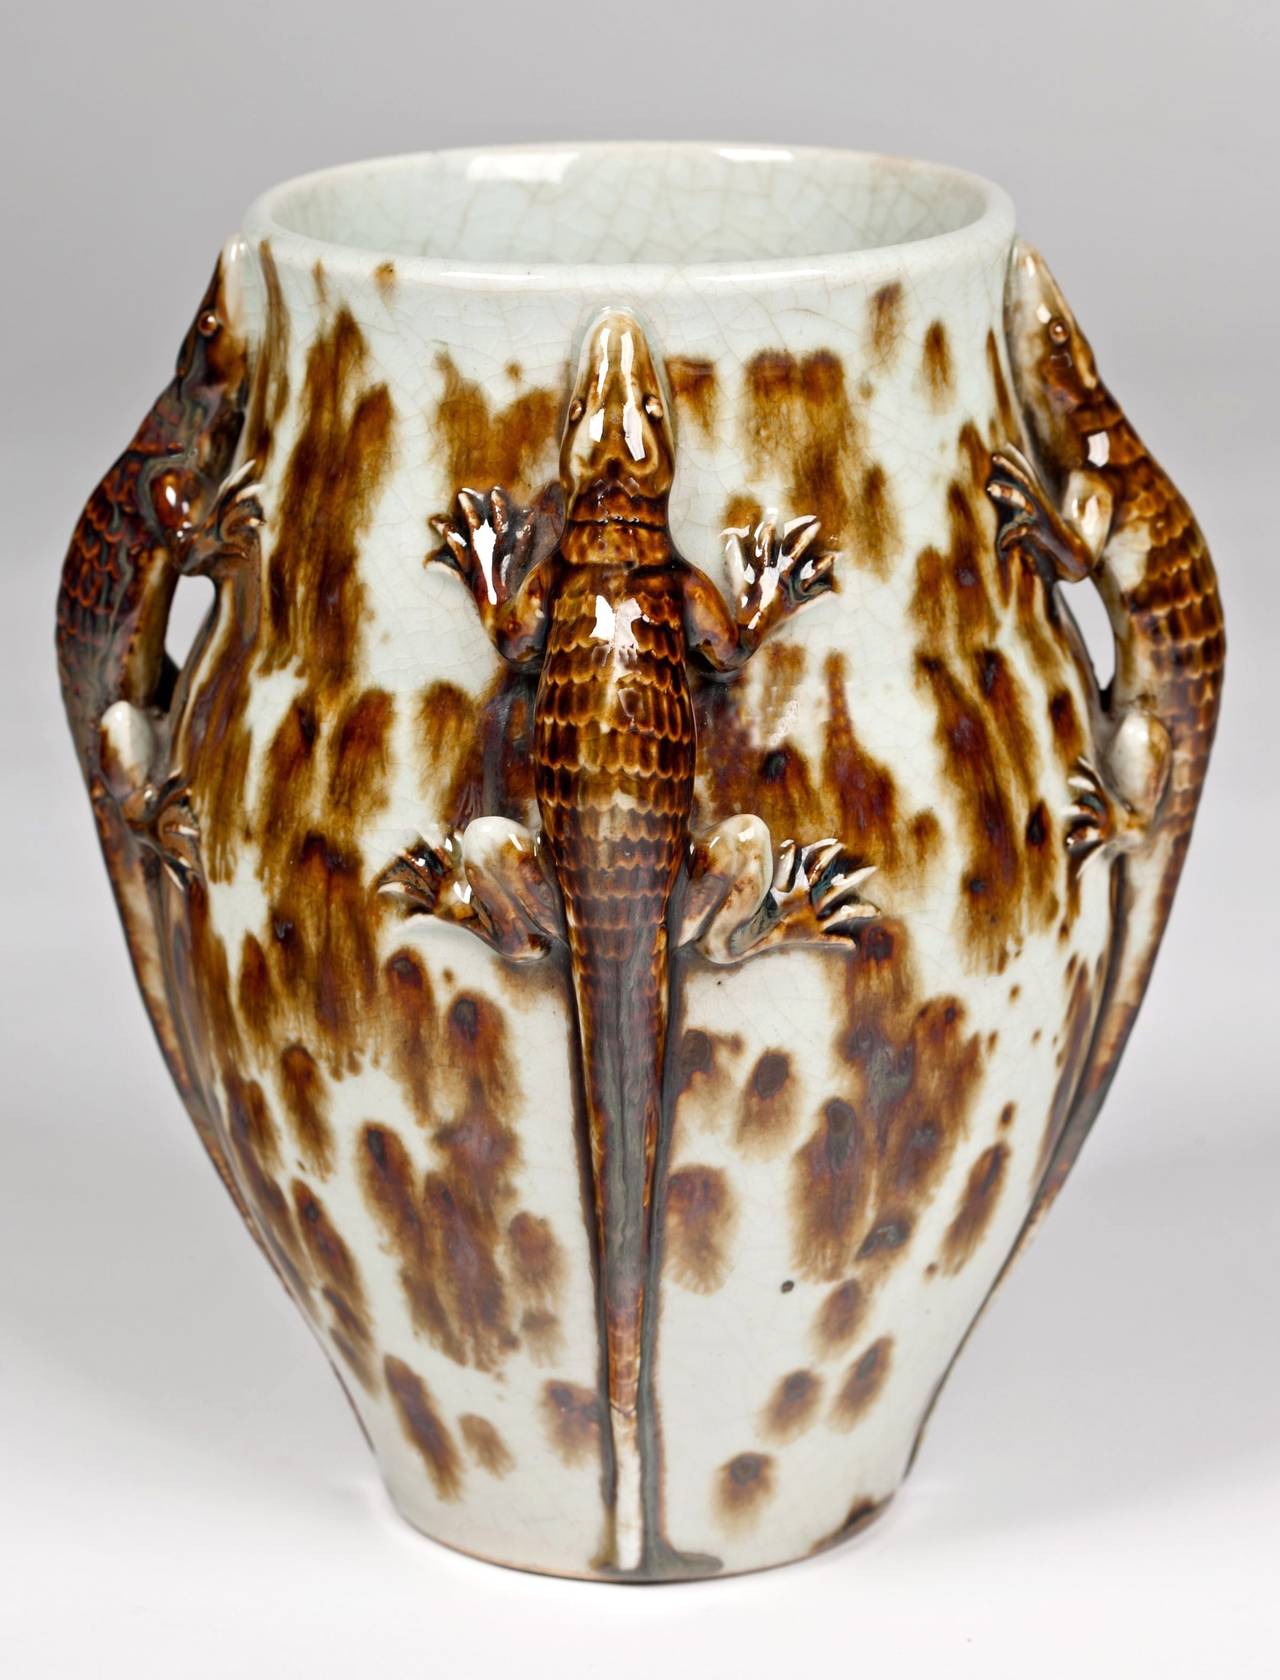 Exceptionnel vase Primavera de style déco français avec des lézards entourant les côtés dans une glaçure craquelée brillante marbrée de brun et de blanc. Signé Primavera.

Note : L'appareil photo émet un flash sur le vase.